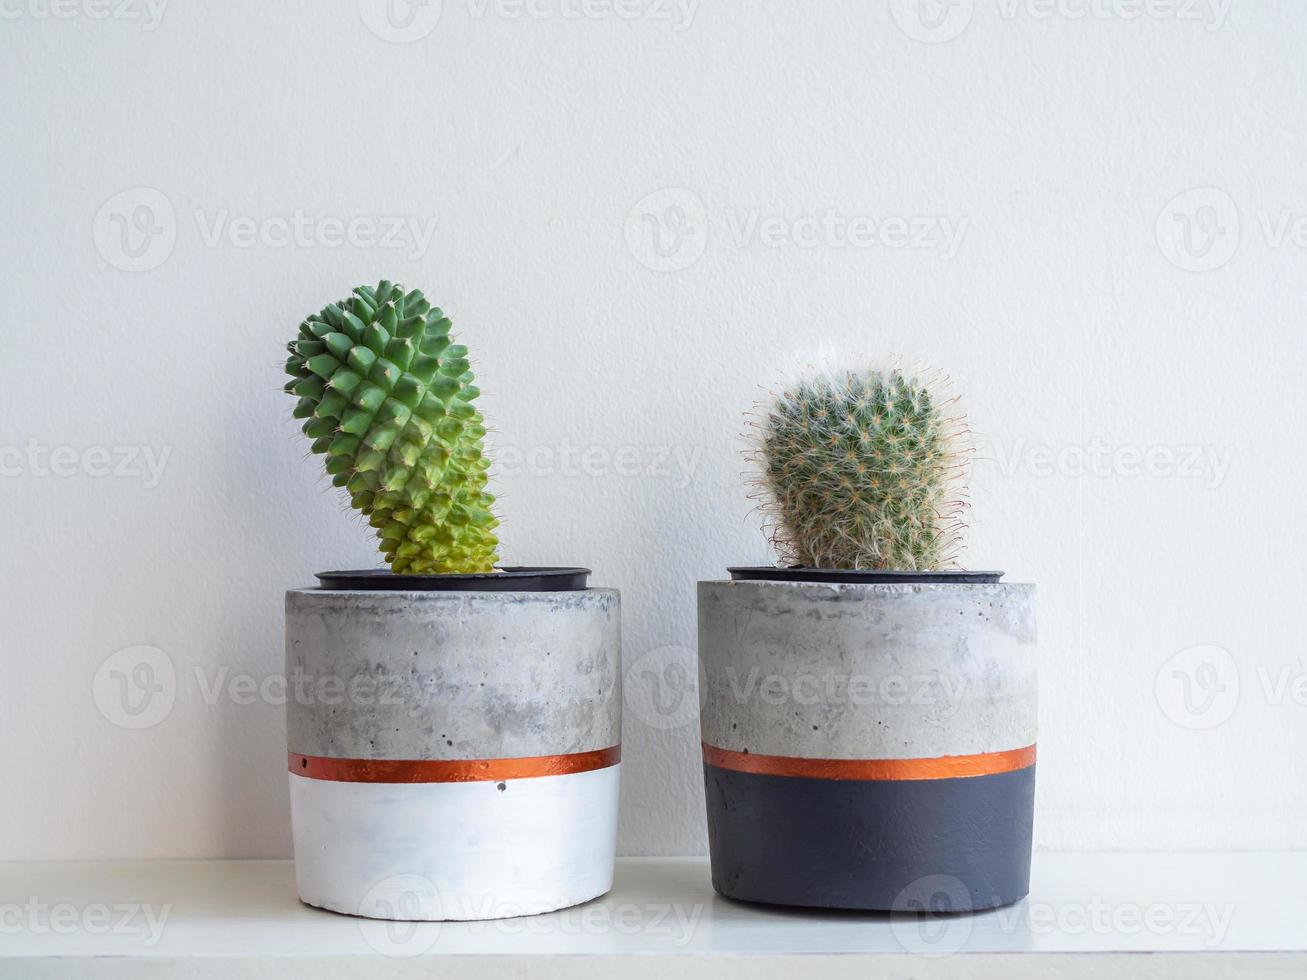 fioriere moderne colorate in cemento con piante di cactus. vasi in cemento dipinto per la decorazione domestica foto